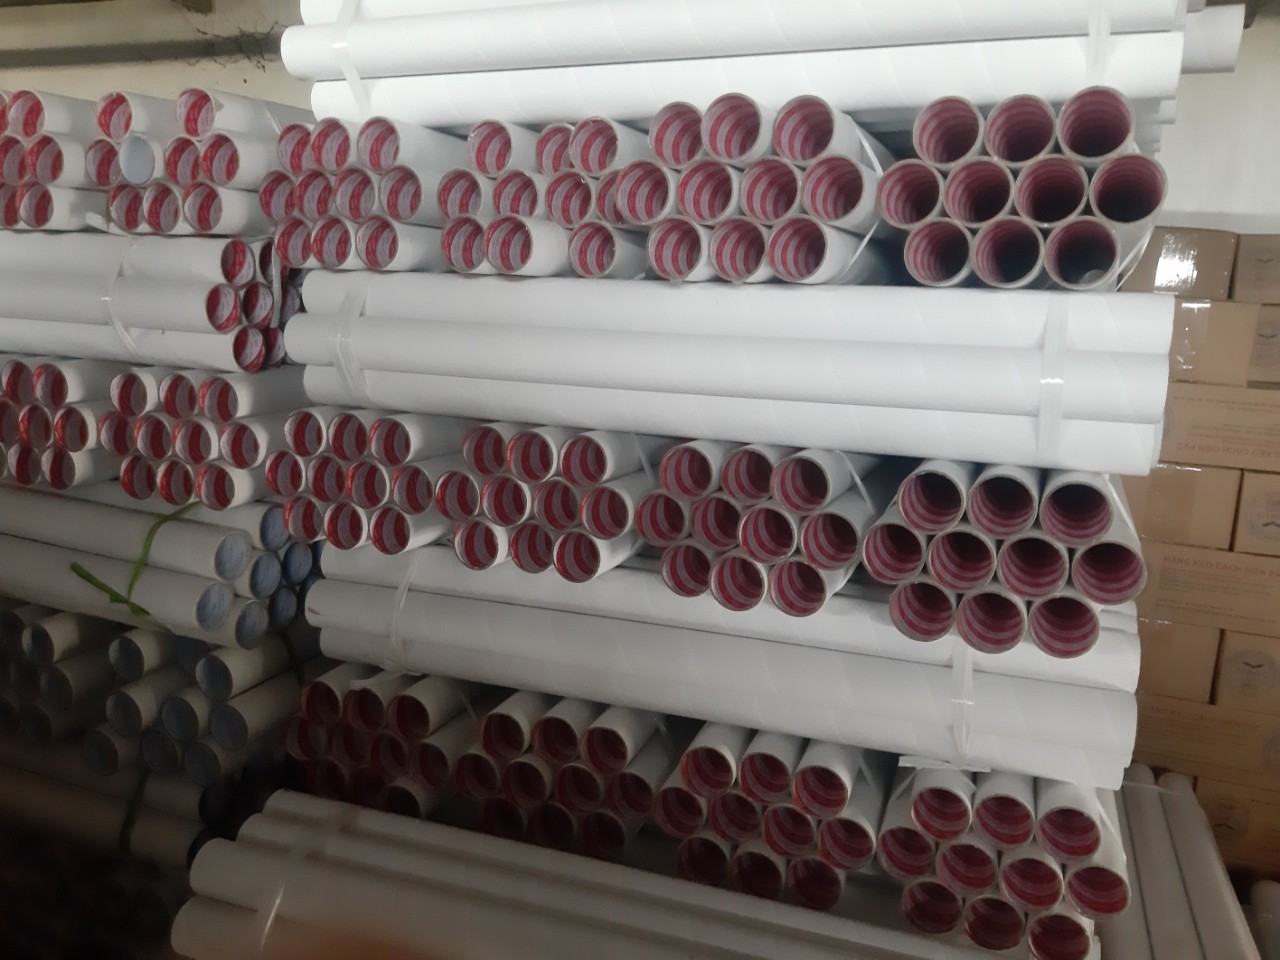 Công ty tân gia hoang sản xuất ống giấy